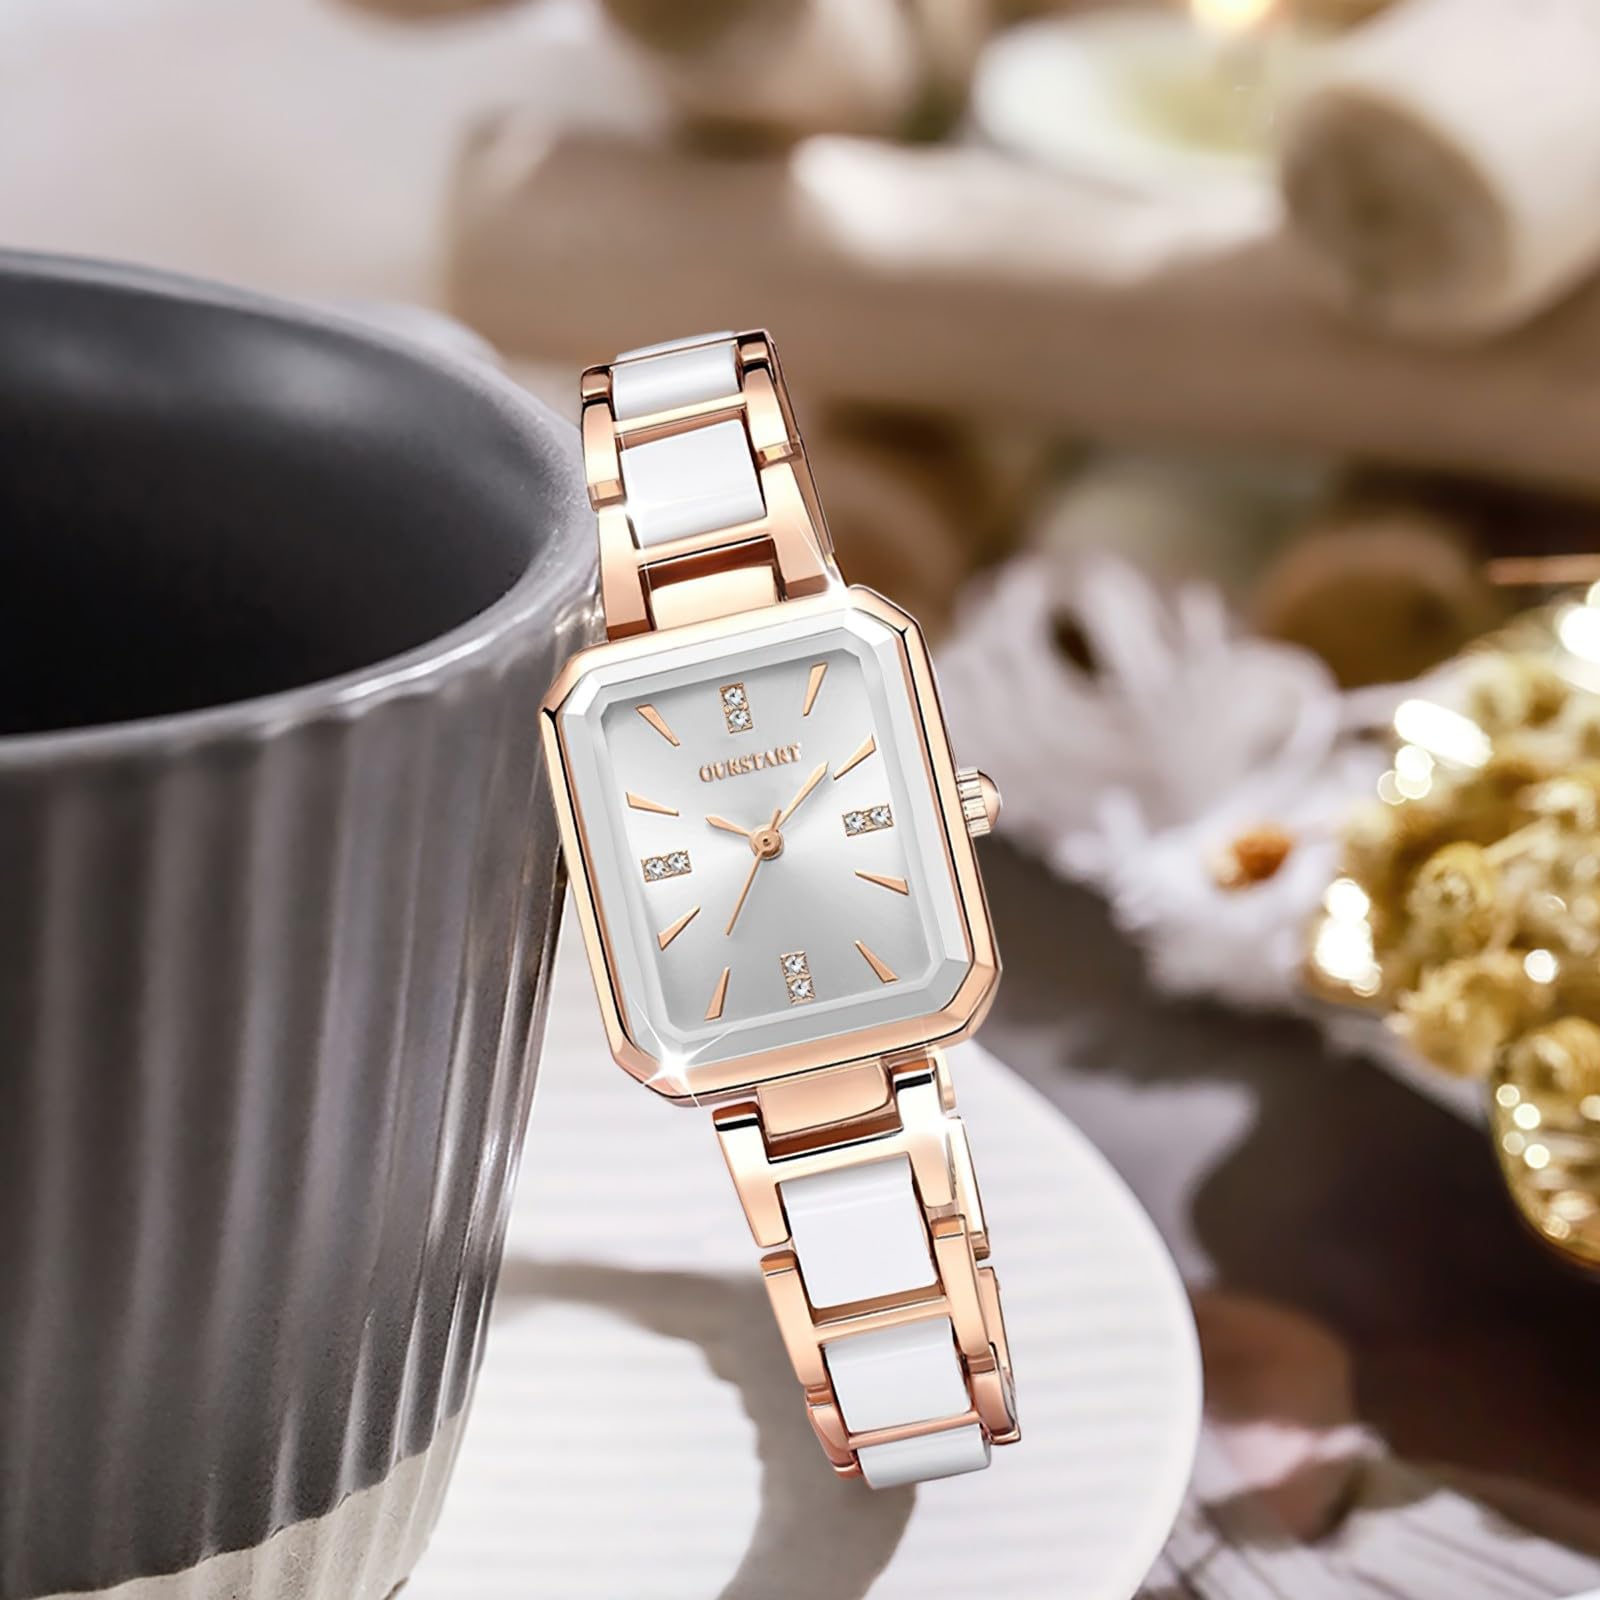 Wrist Watch for Women, Elegant Designed Lady's Watch, Quartz Analog Women's Watch with Ceramics Strap